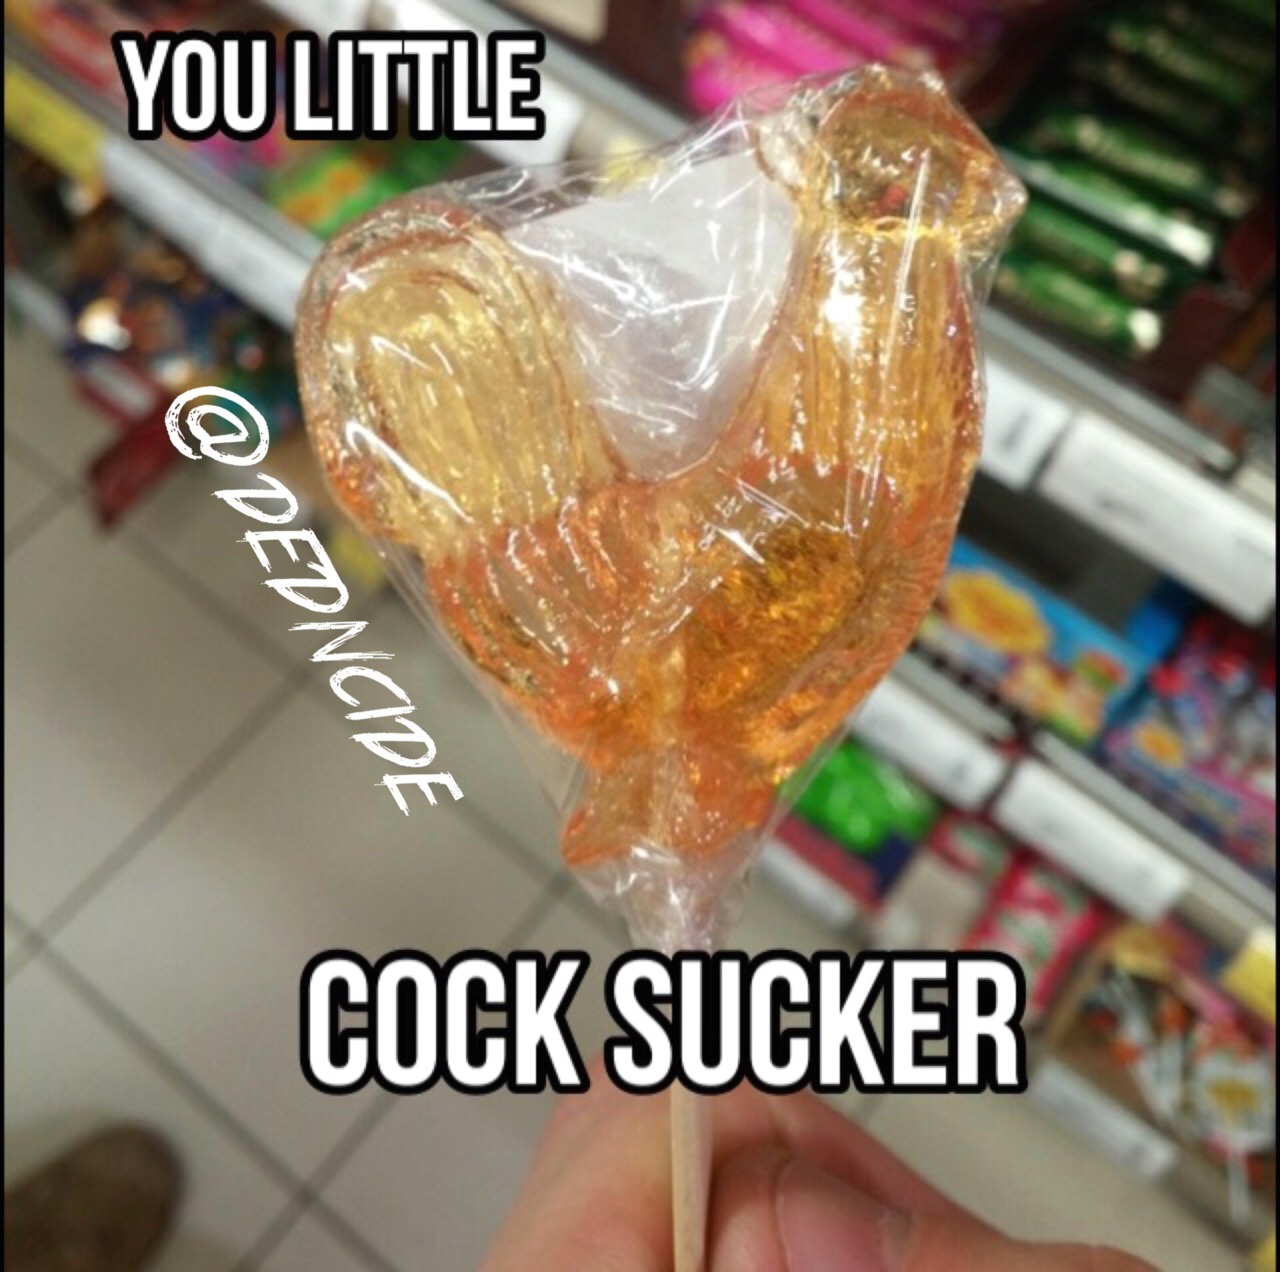 Cock sucker - meme